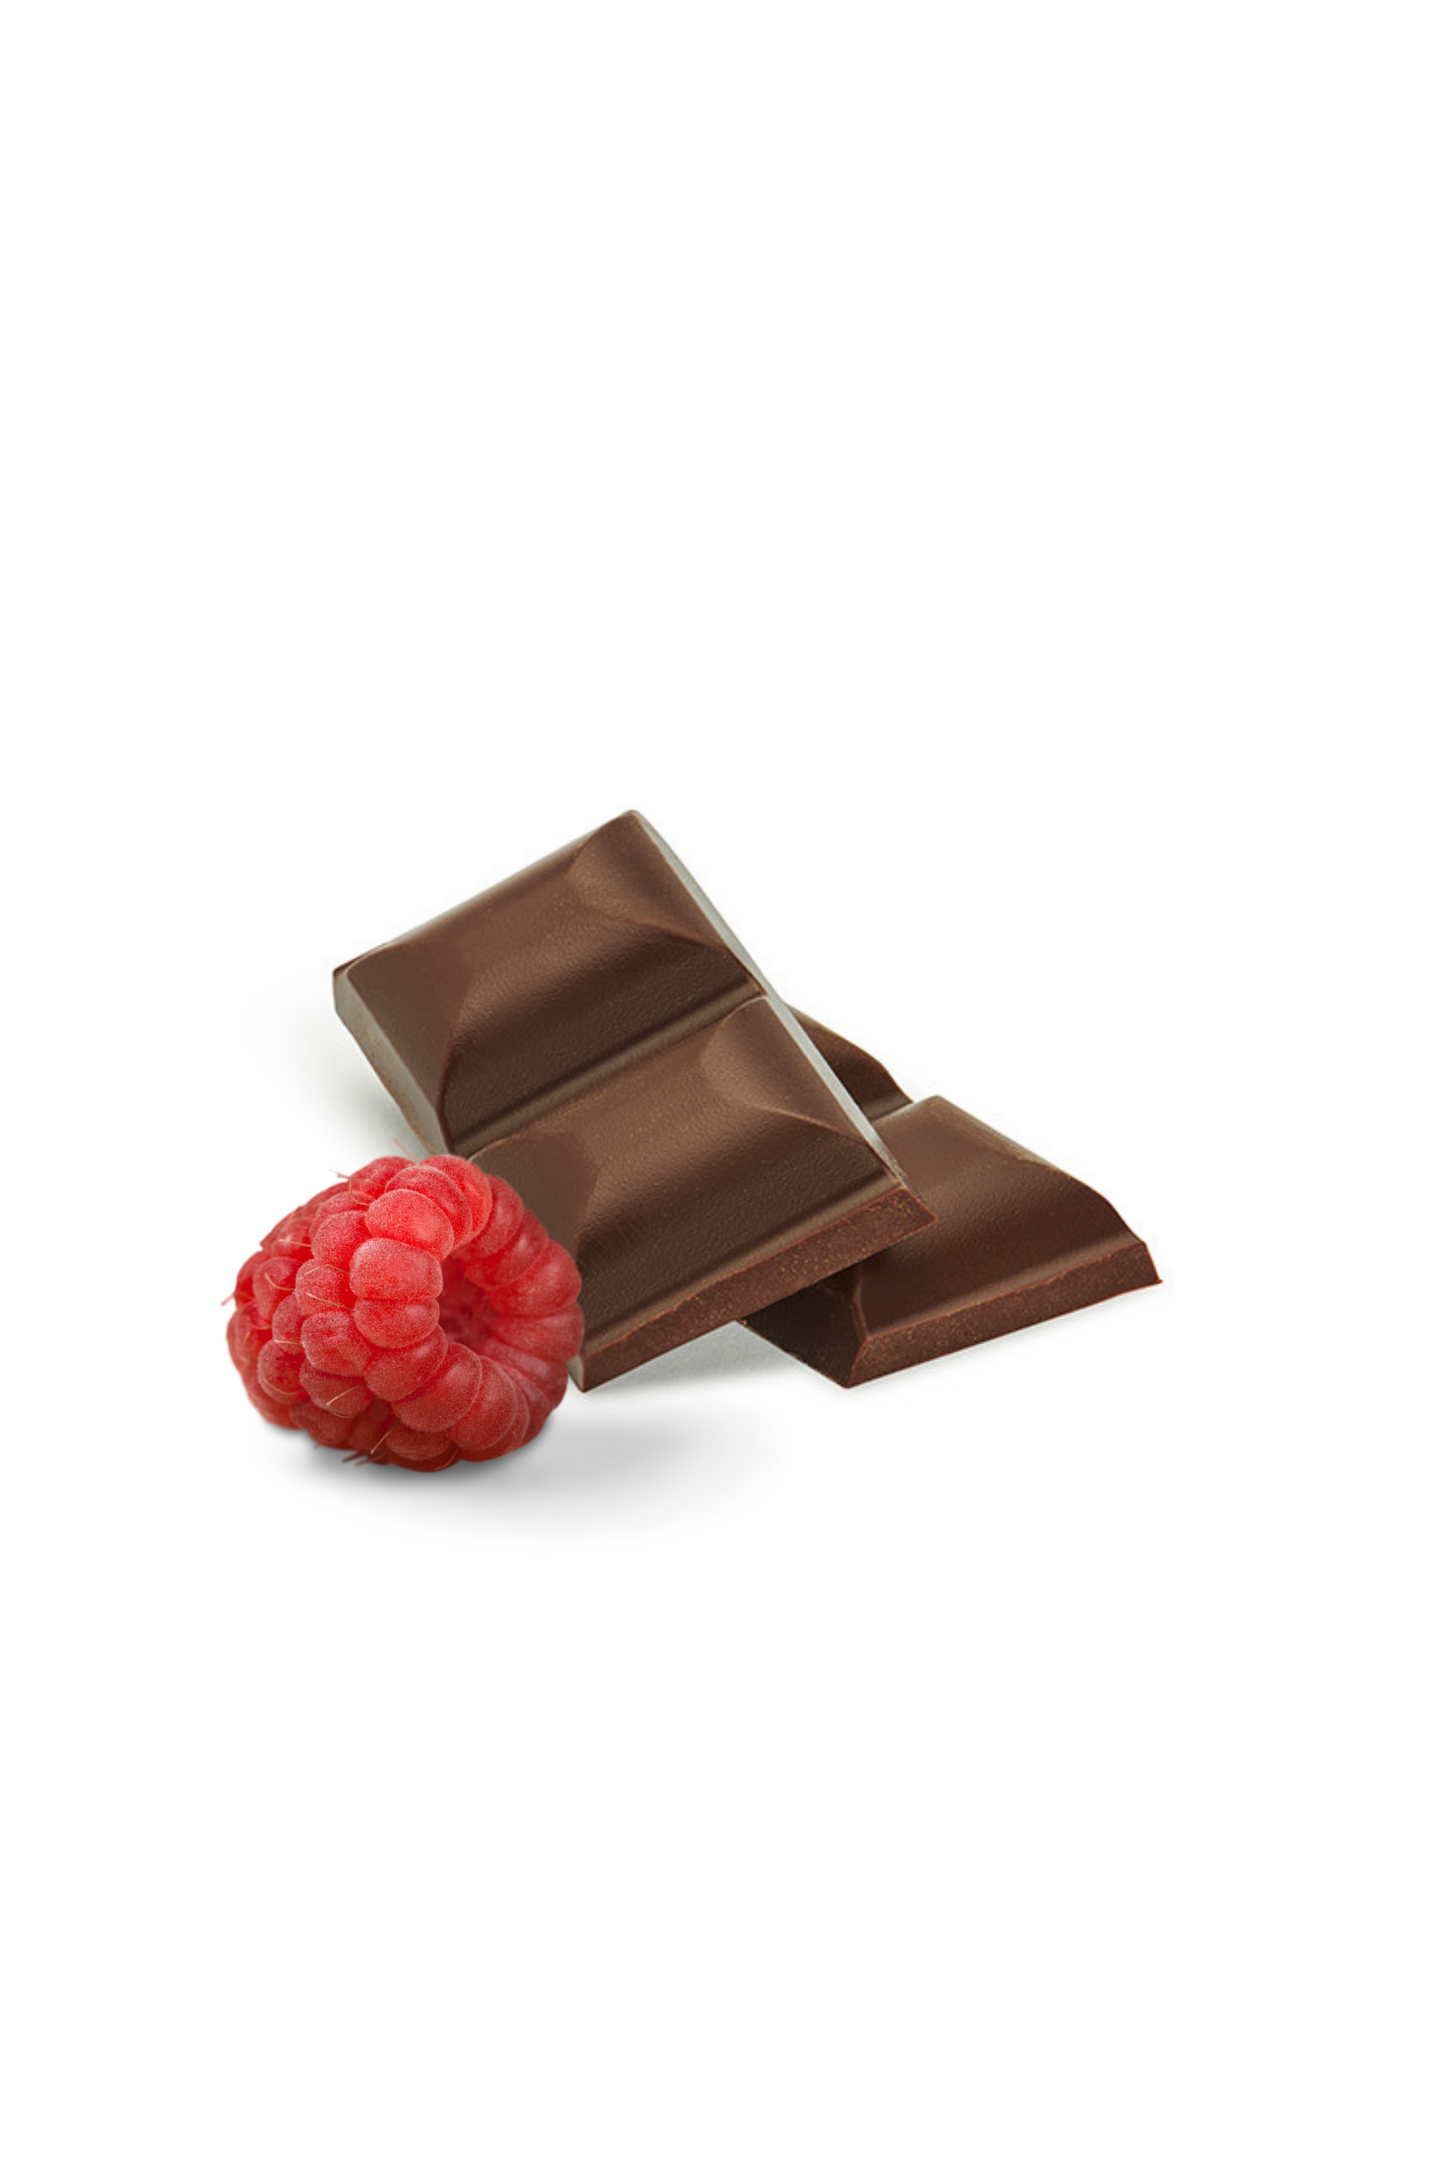 Edelbitter Schokolade mit Himbeeren, ohne Zuckerzusatz. 65% Kakaoanteil. Vegan